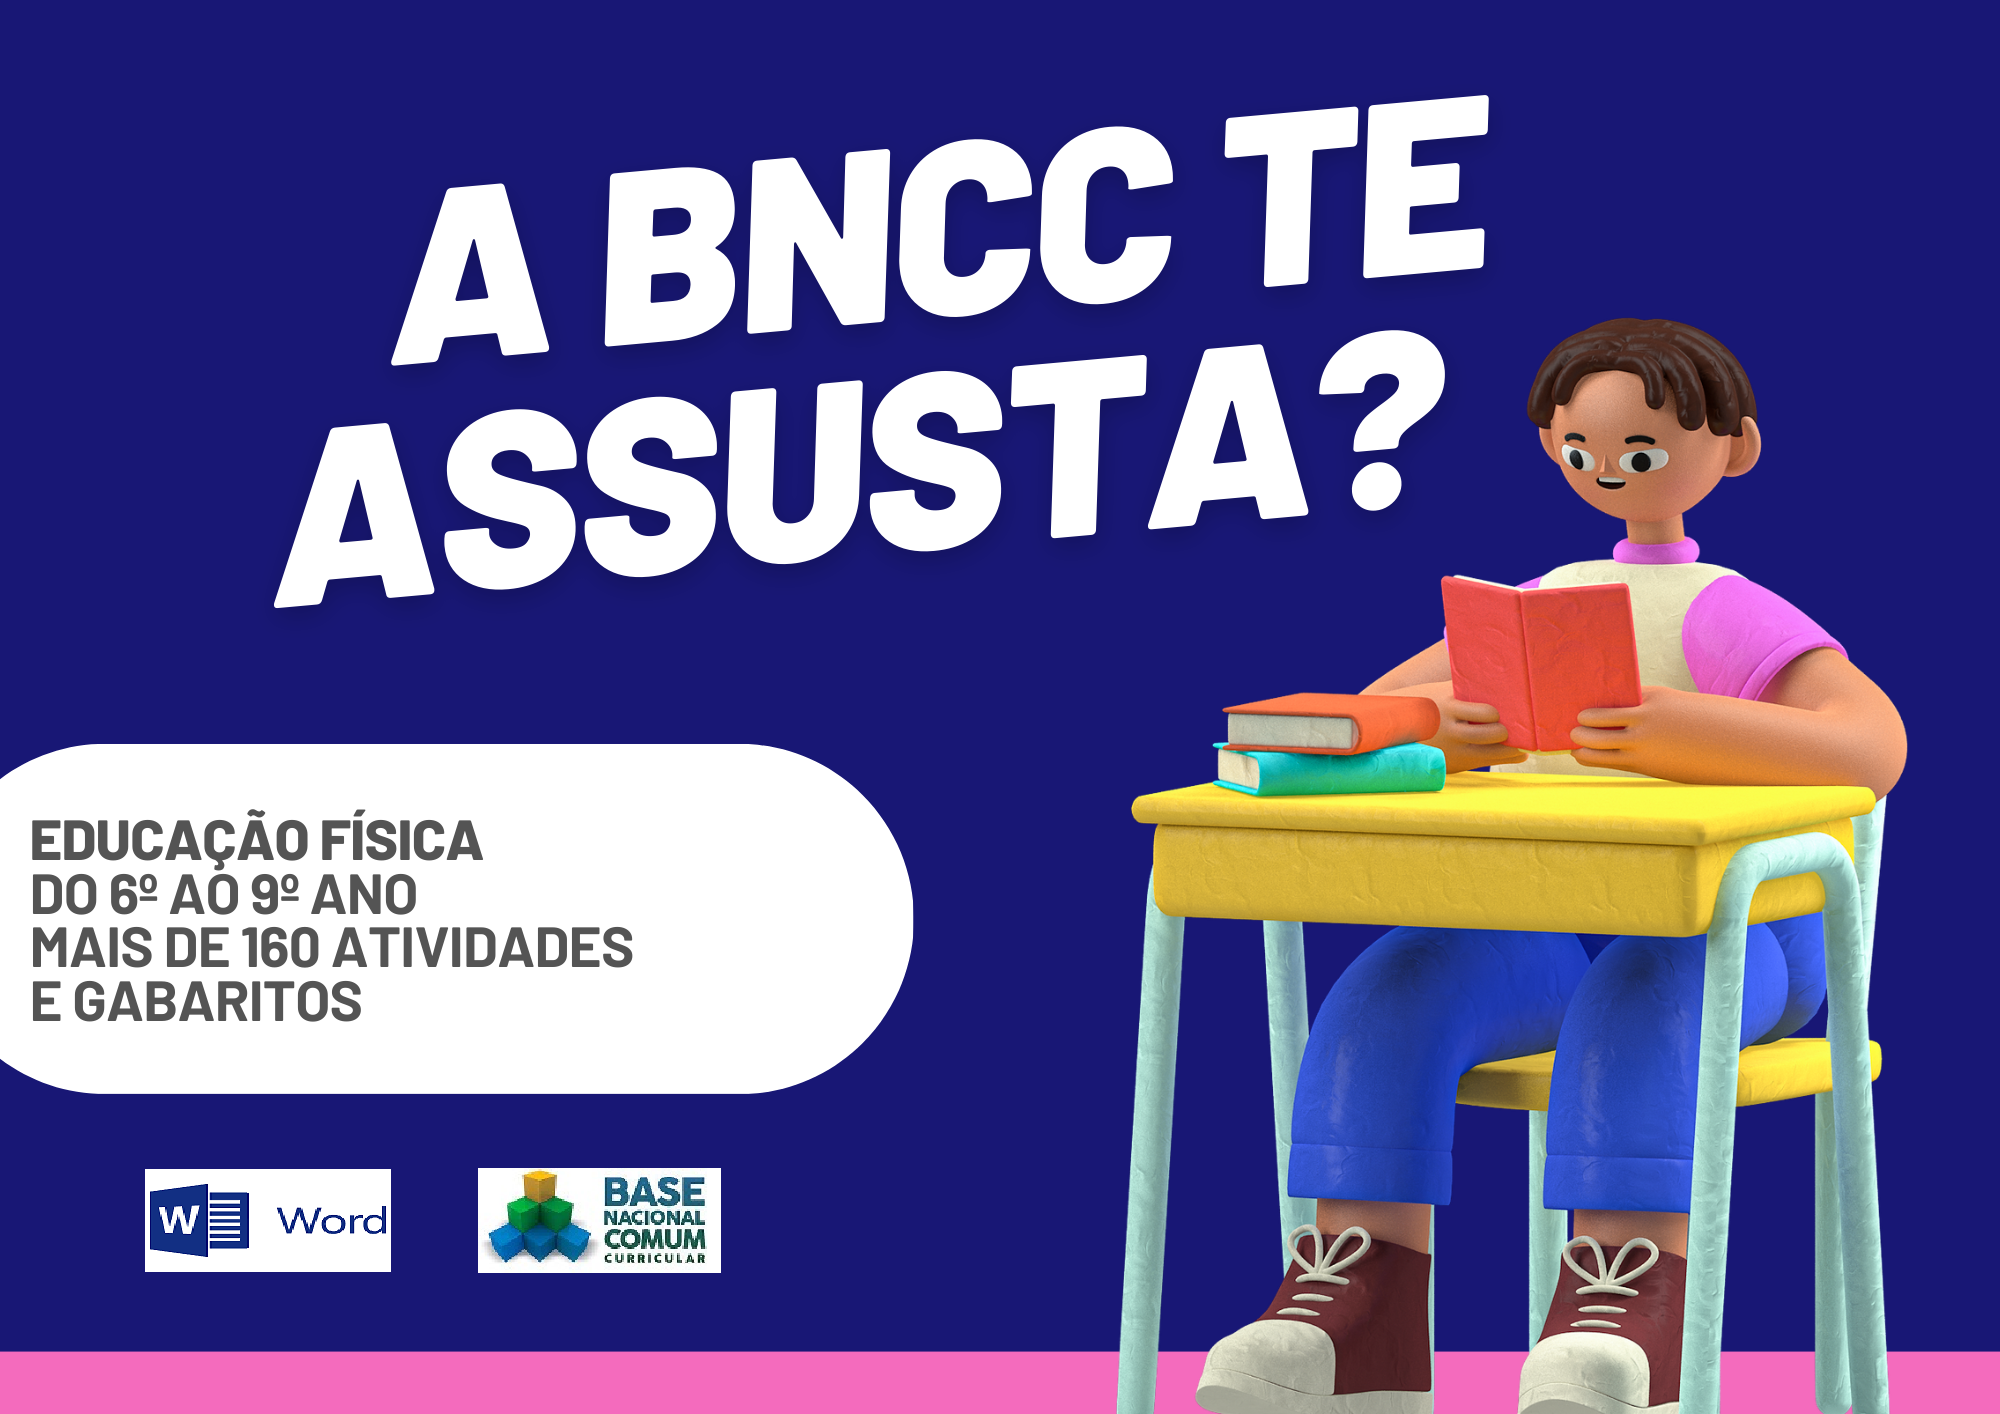 A BNCC te assusta educação física do 6º ao 9º ano mais de 160 atividades e gabaritos com um aluno segurando um livro e os símbolos do Word e da BNCC